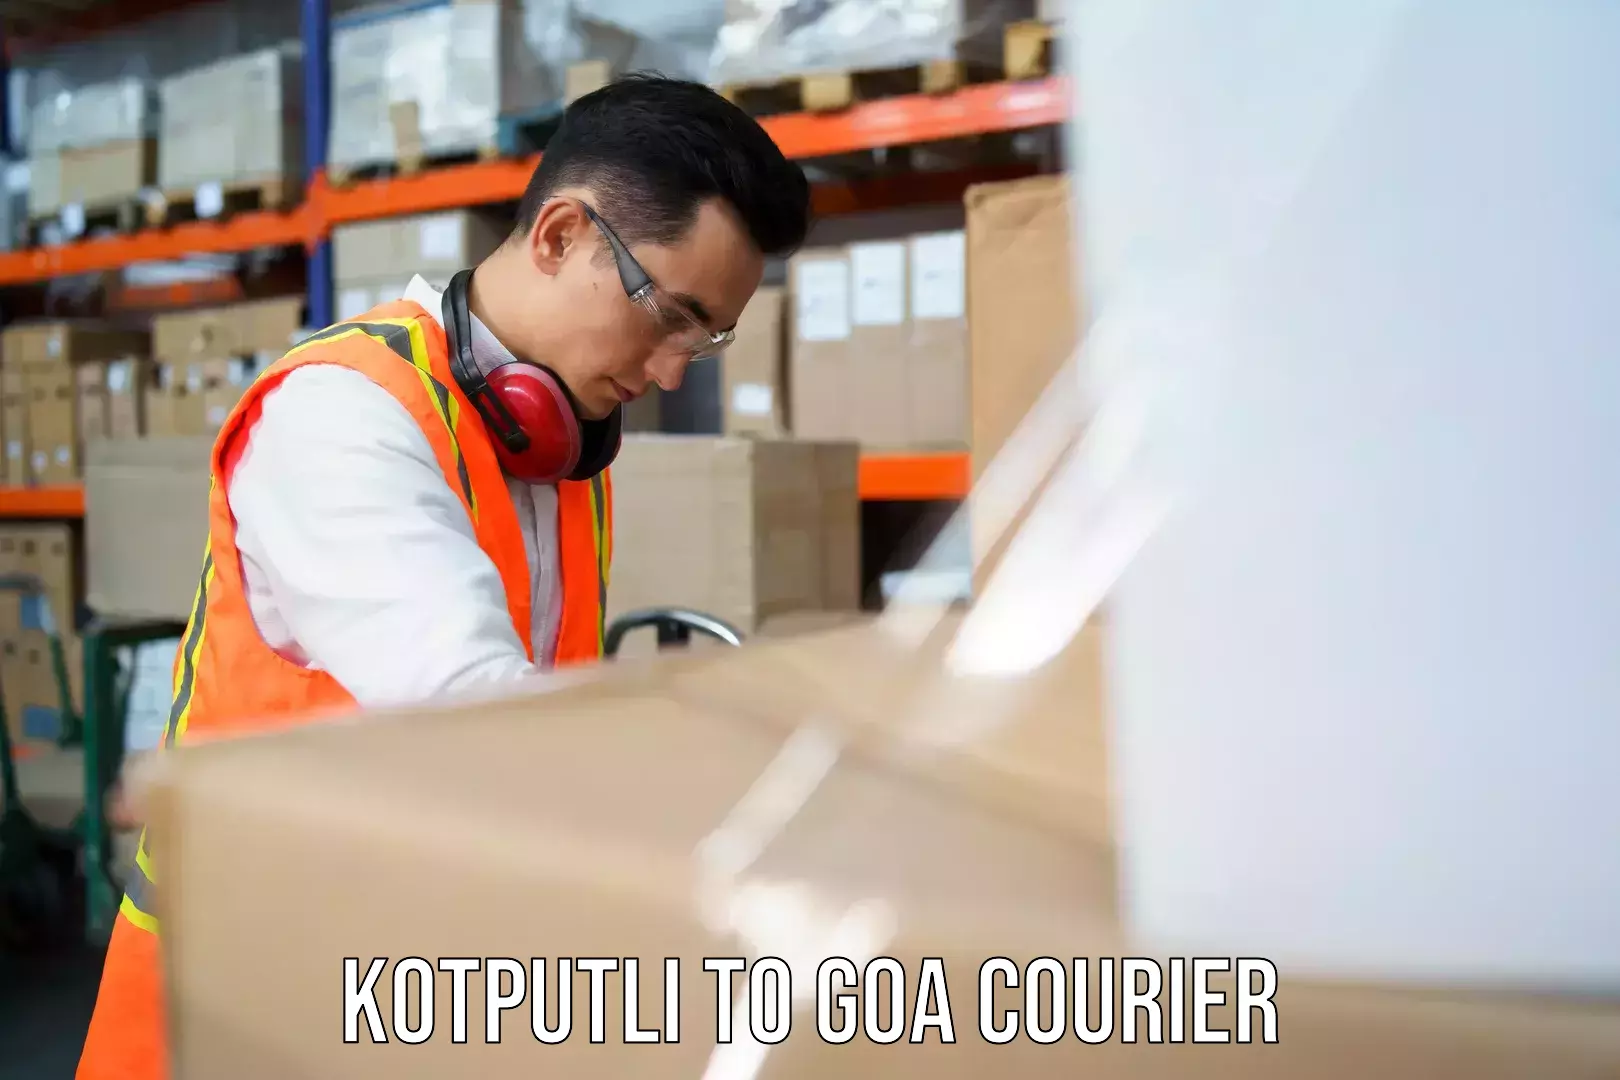 Courier services Kotputli to IIT Goa